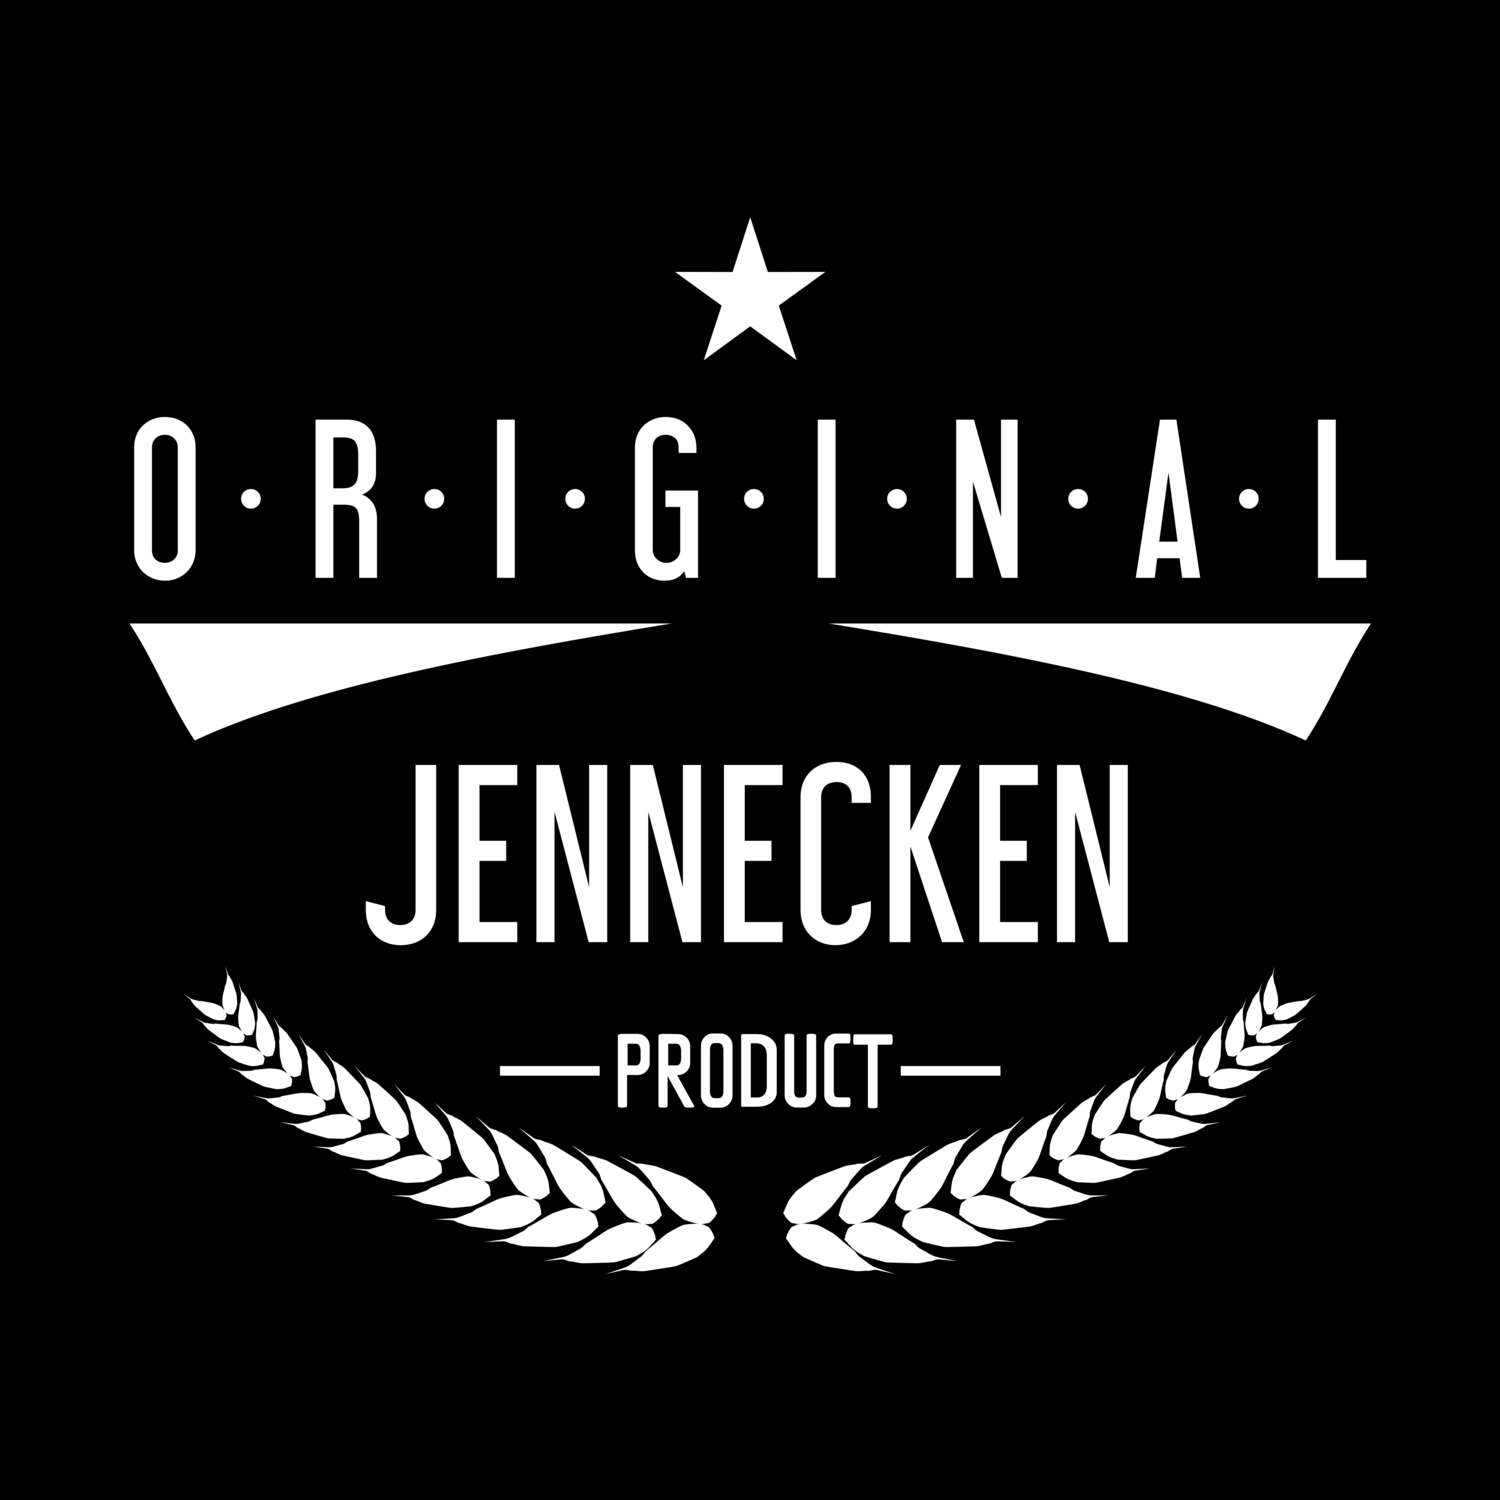 Jennecken T-Shirt »Original Product«